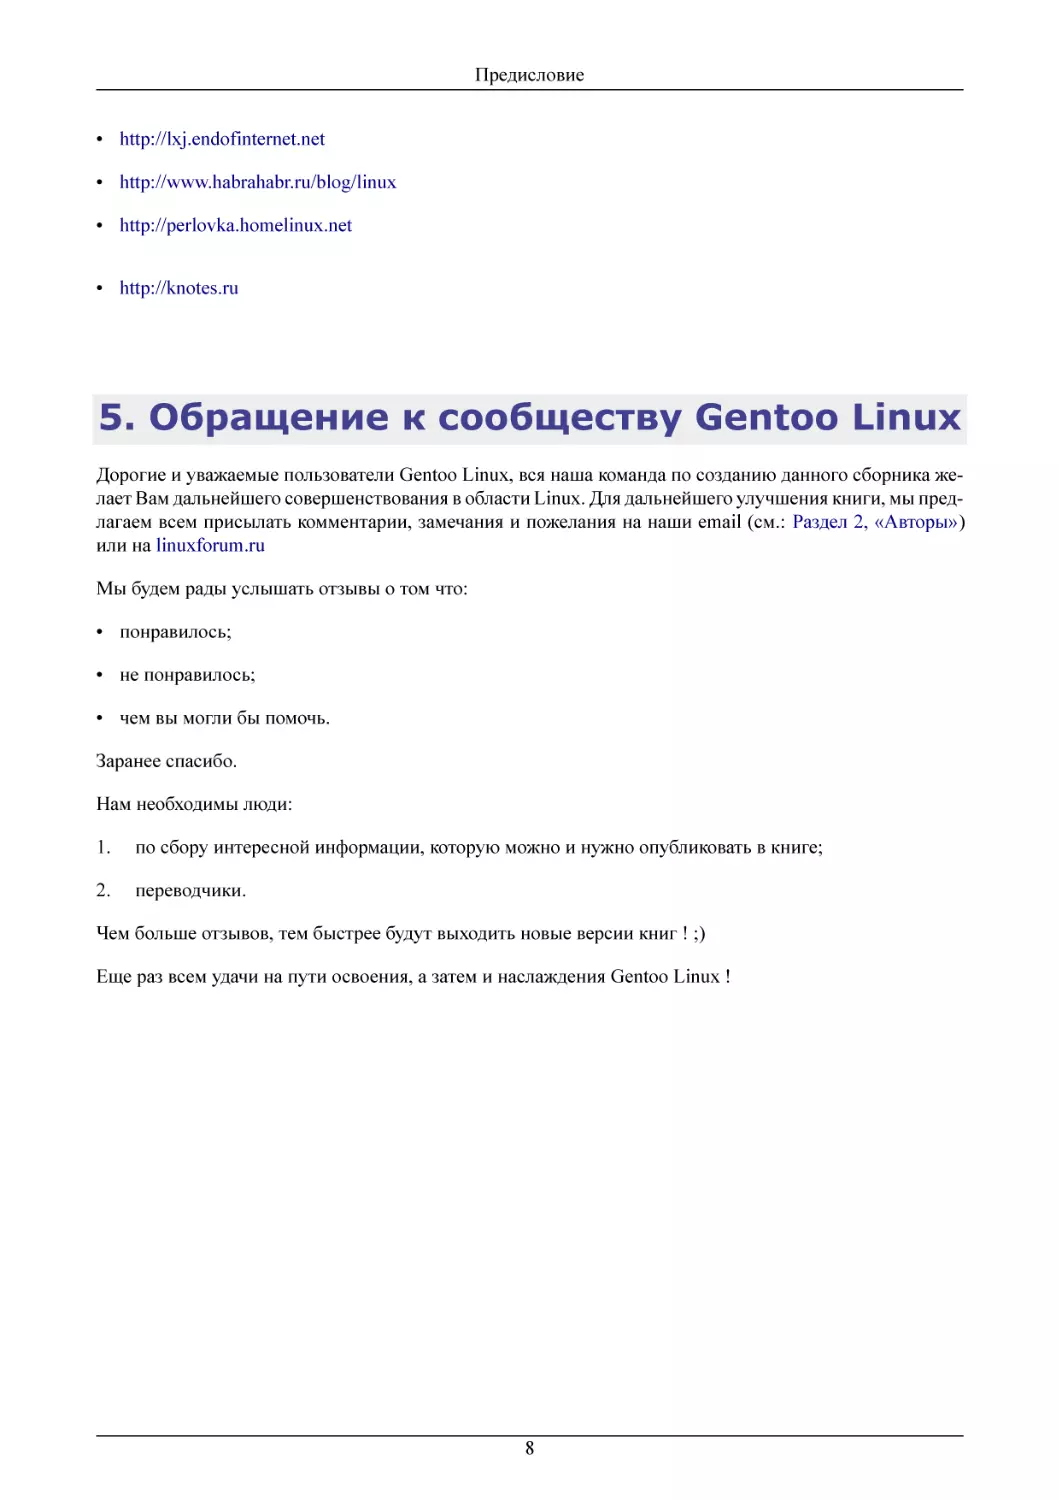 Обращение к сообществу Gentoo Linux